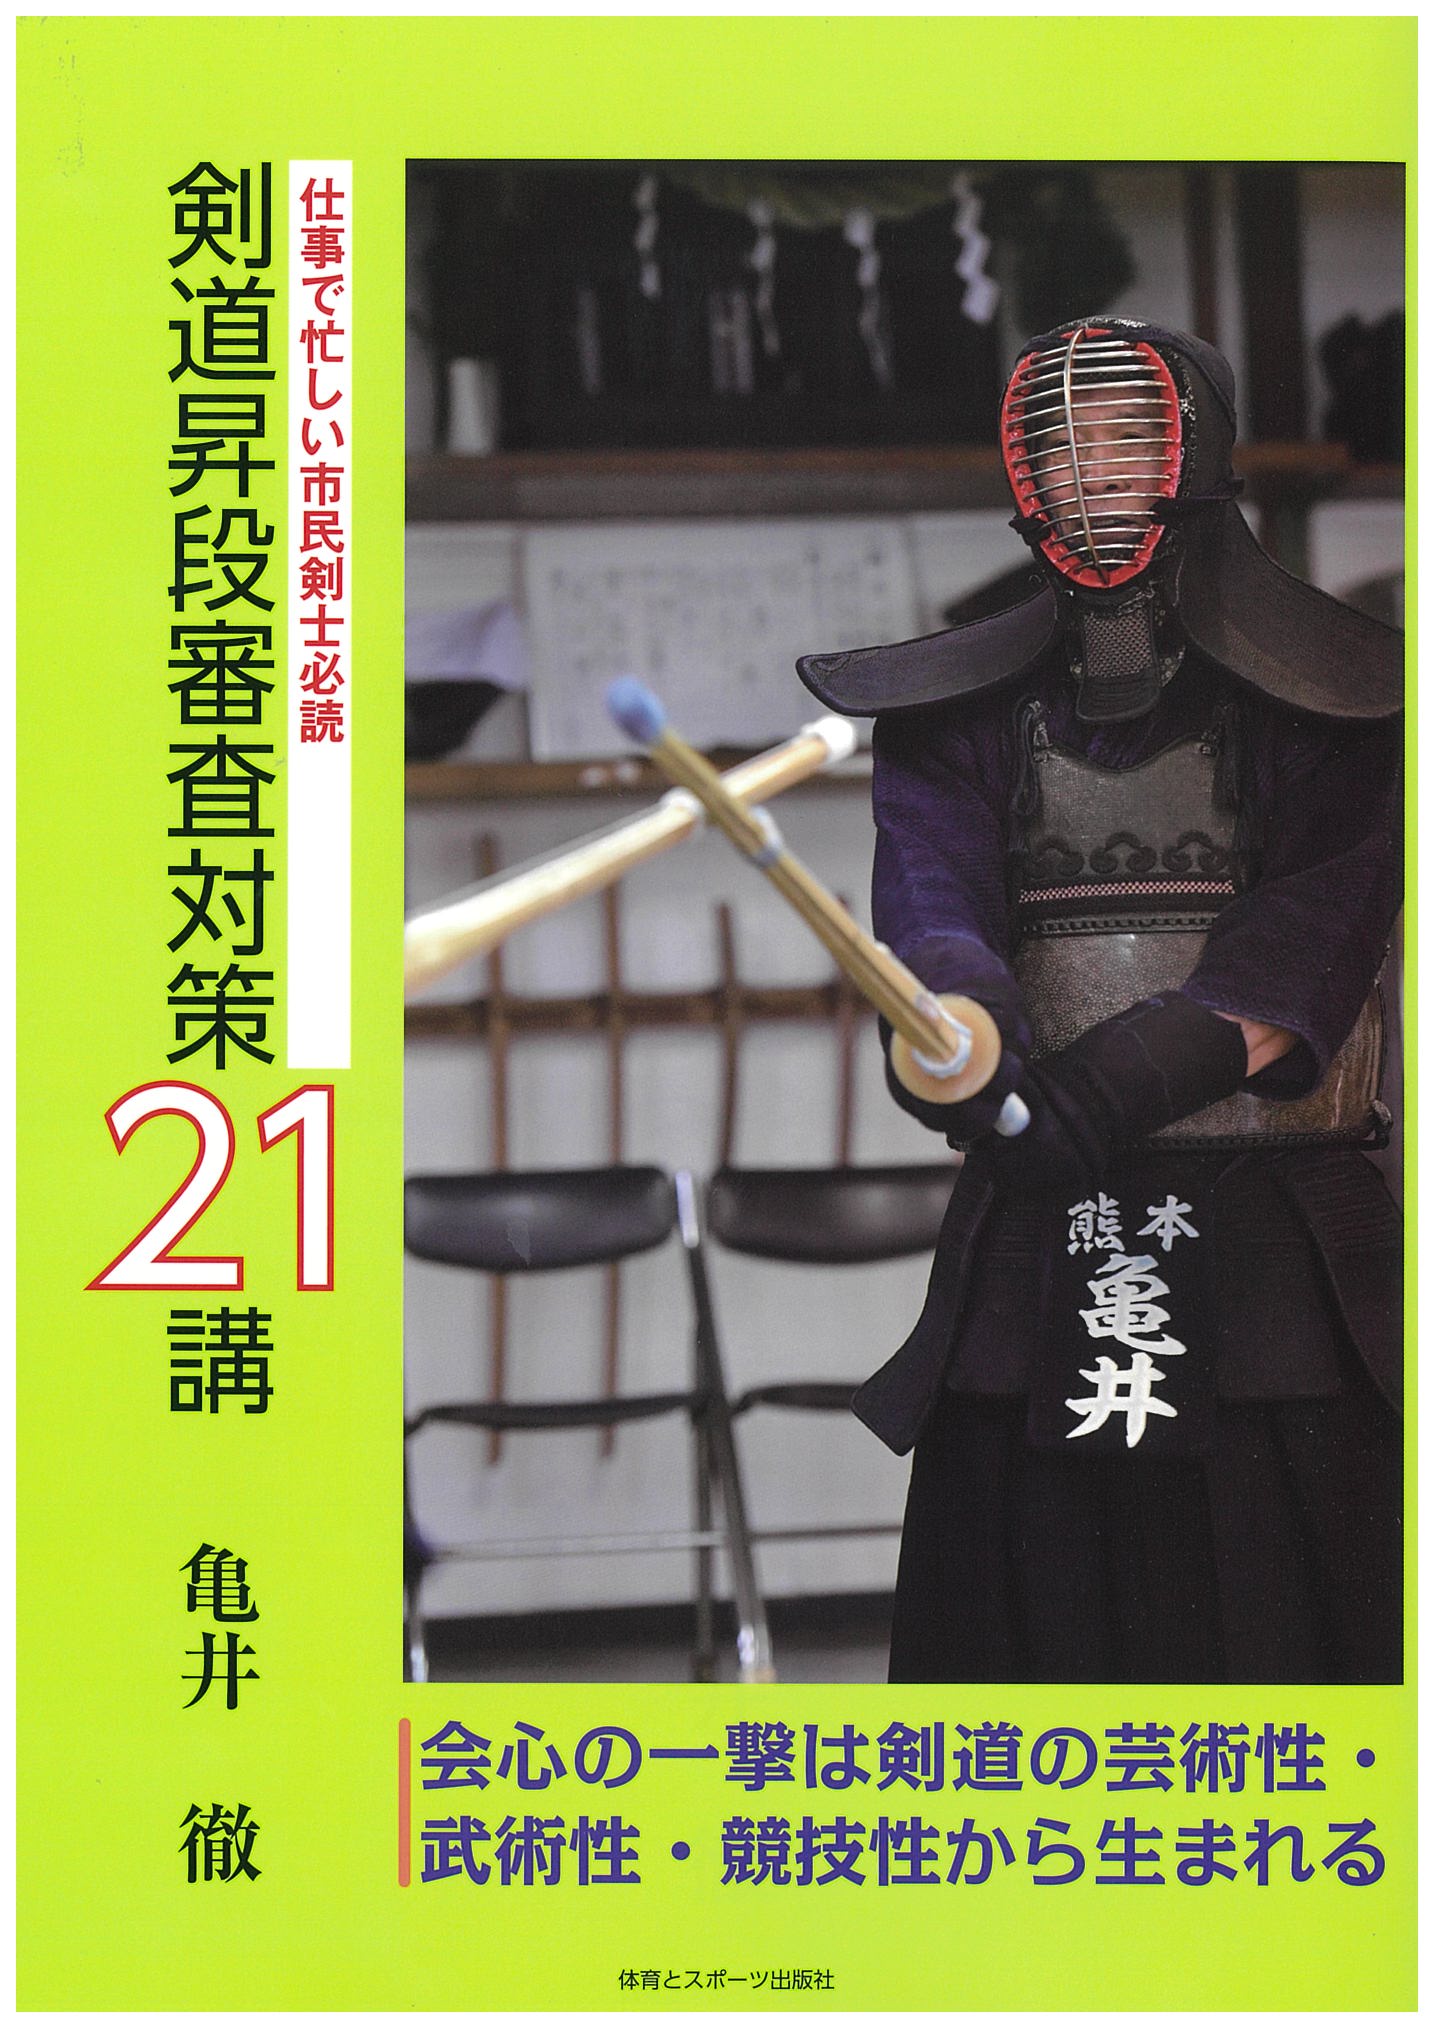 剣道昇段審査対策21講